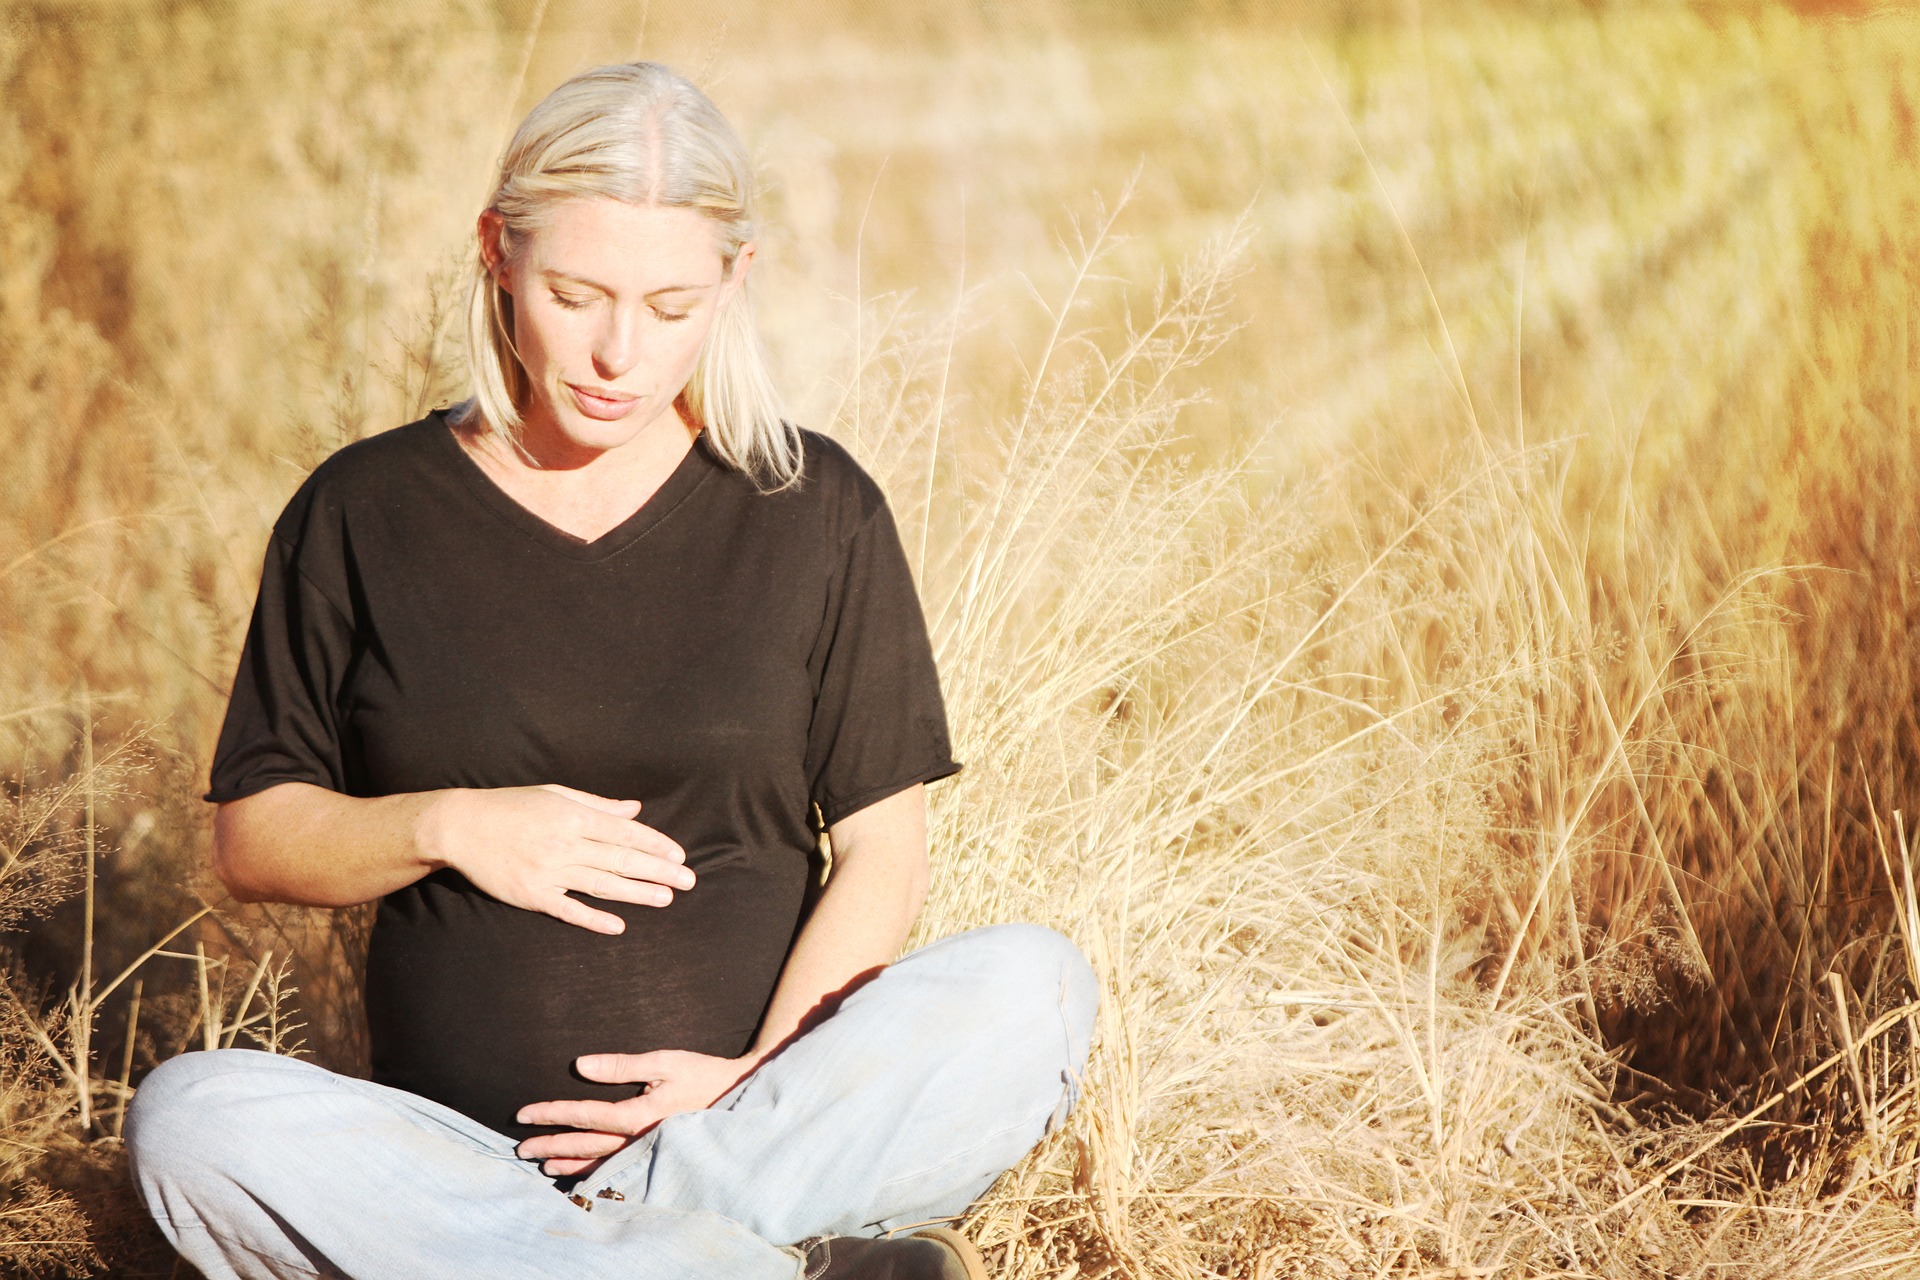 Raskaana oleva nainen istuu heinikossa ja pitele käsiään raskausmahan päällä.